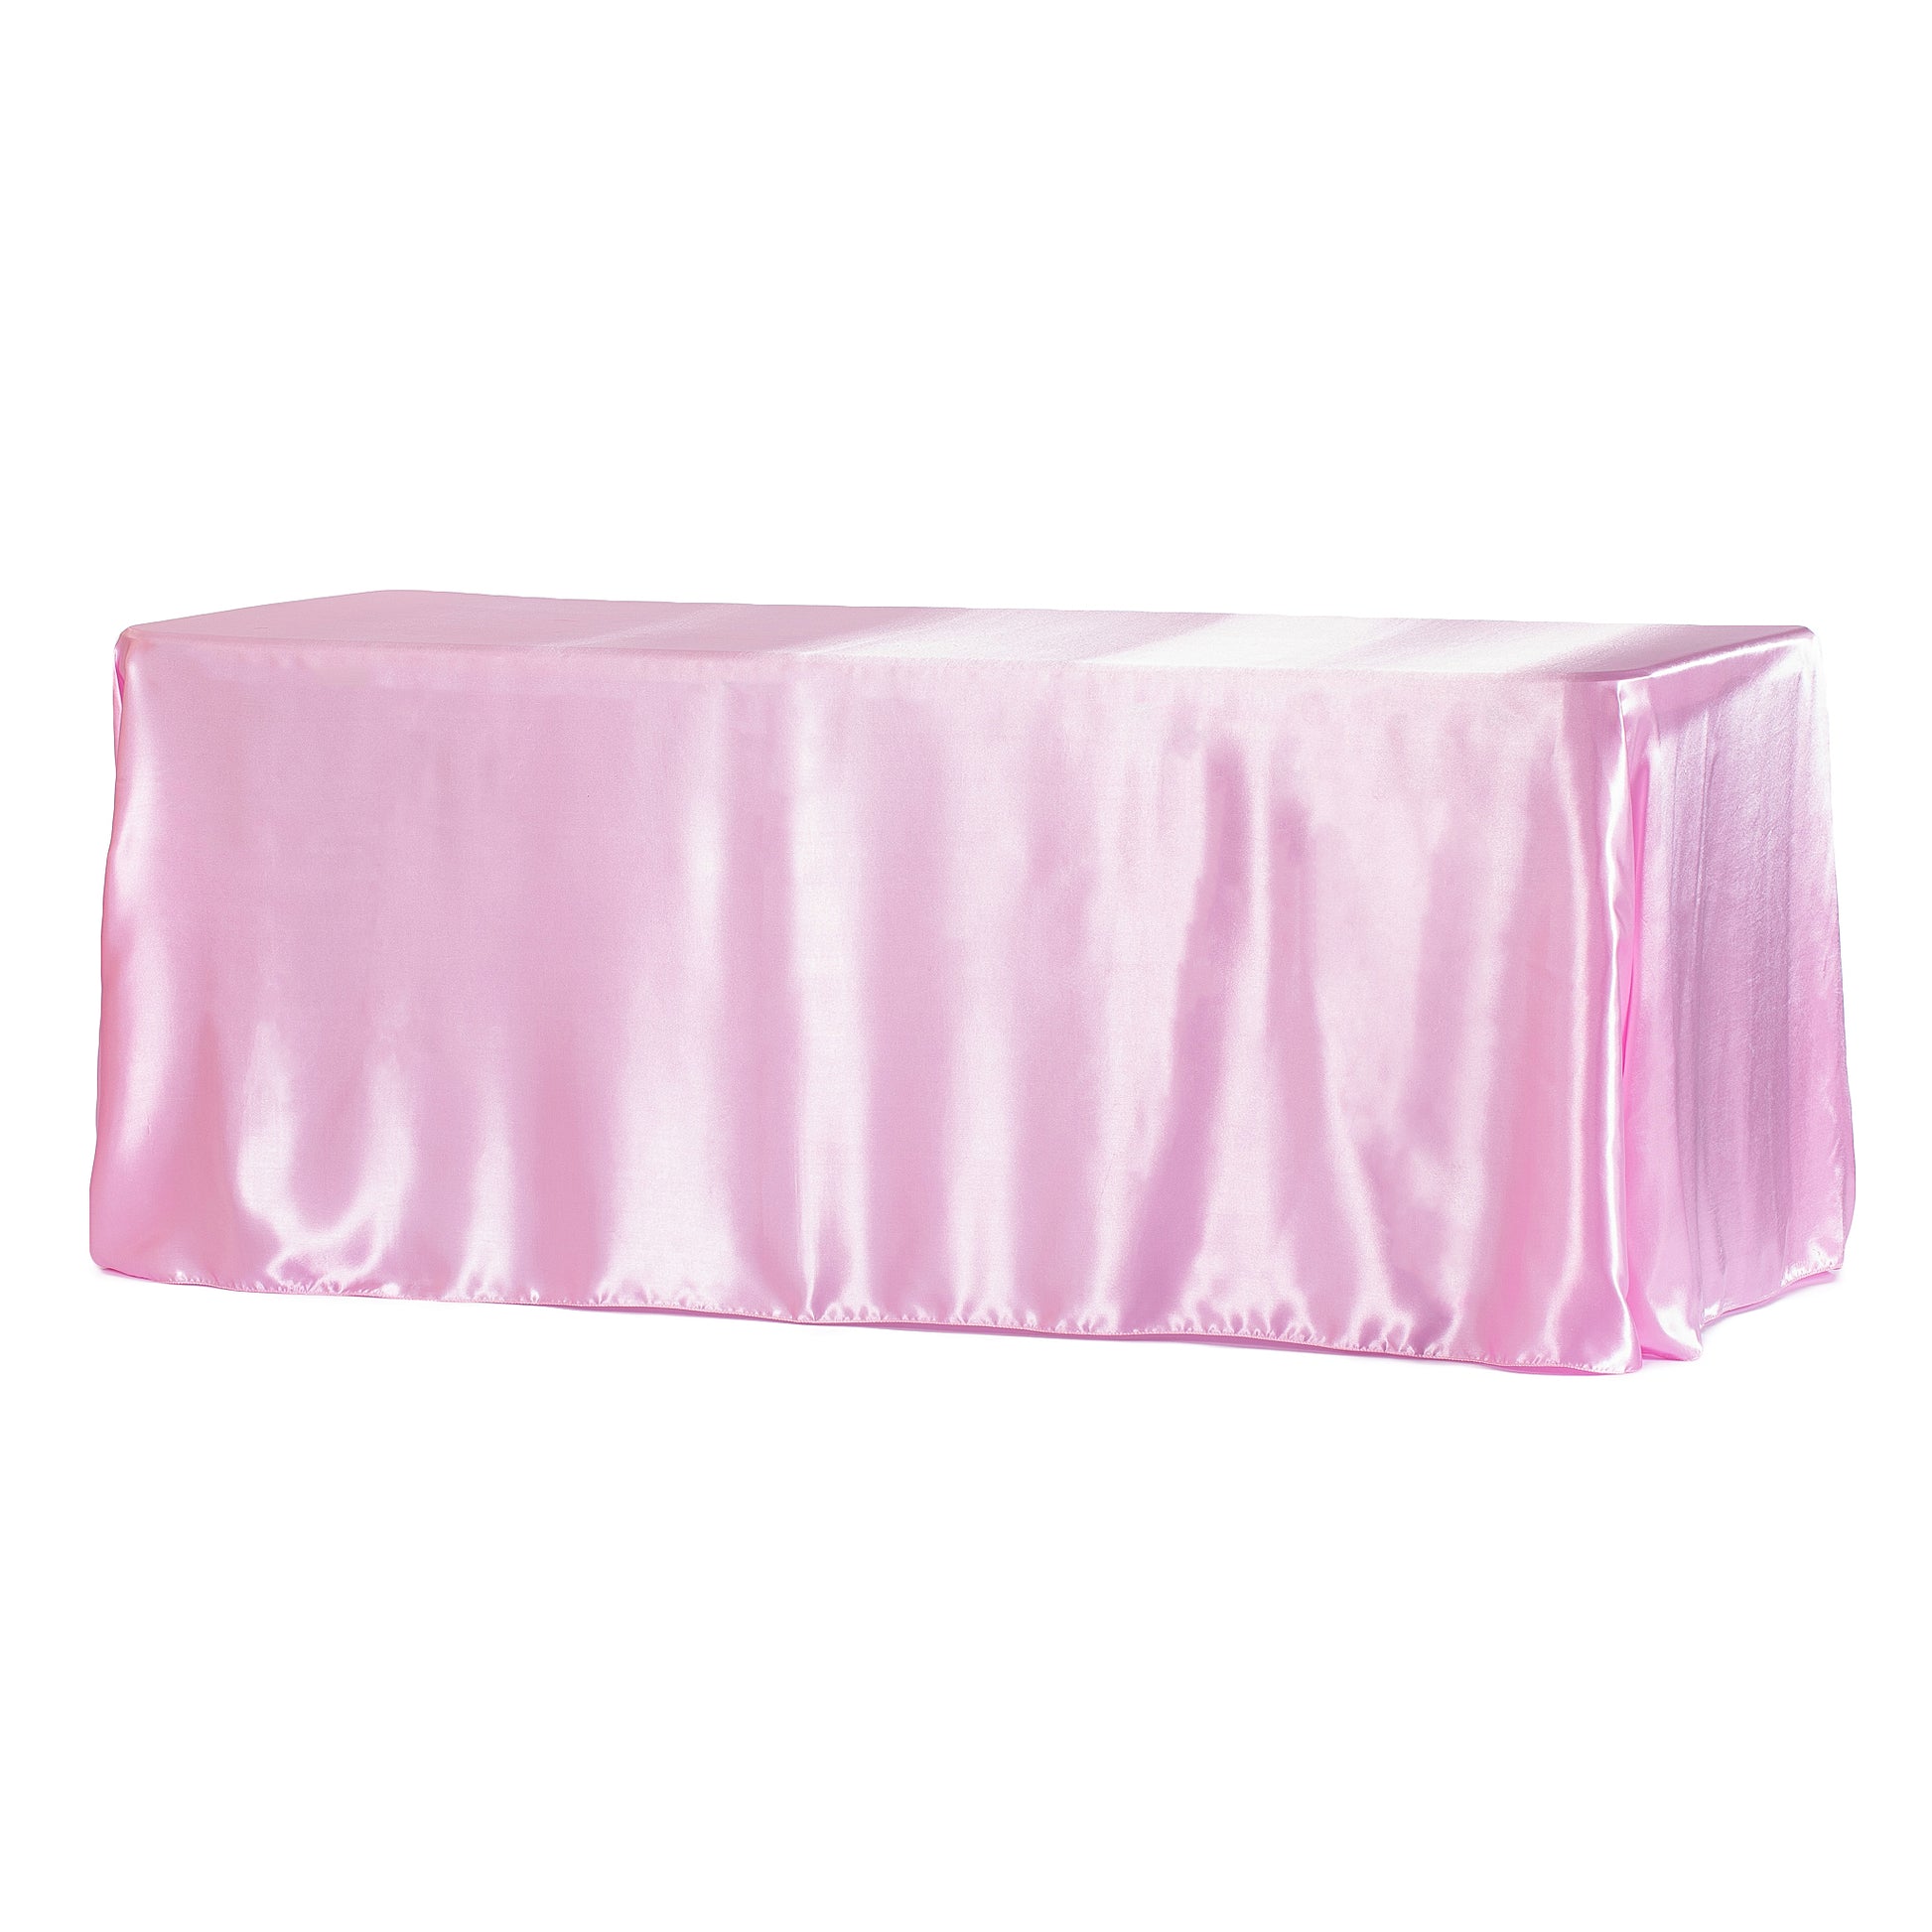 90"x156" Rectangular Satin Tablecloth - Medium Pink